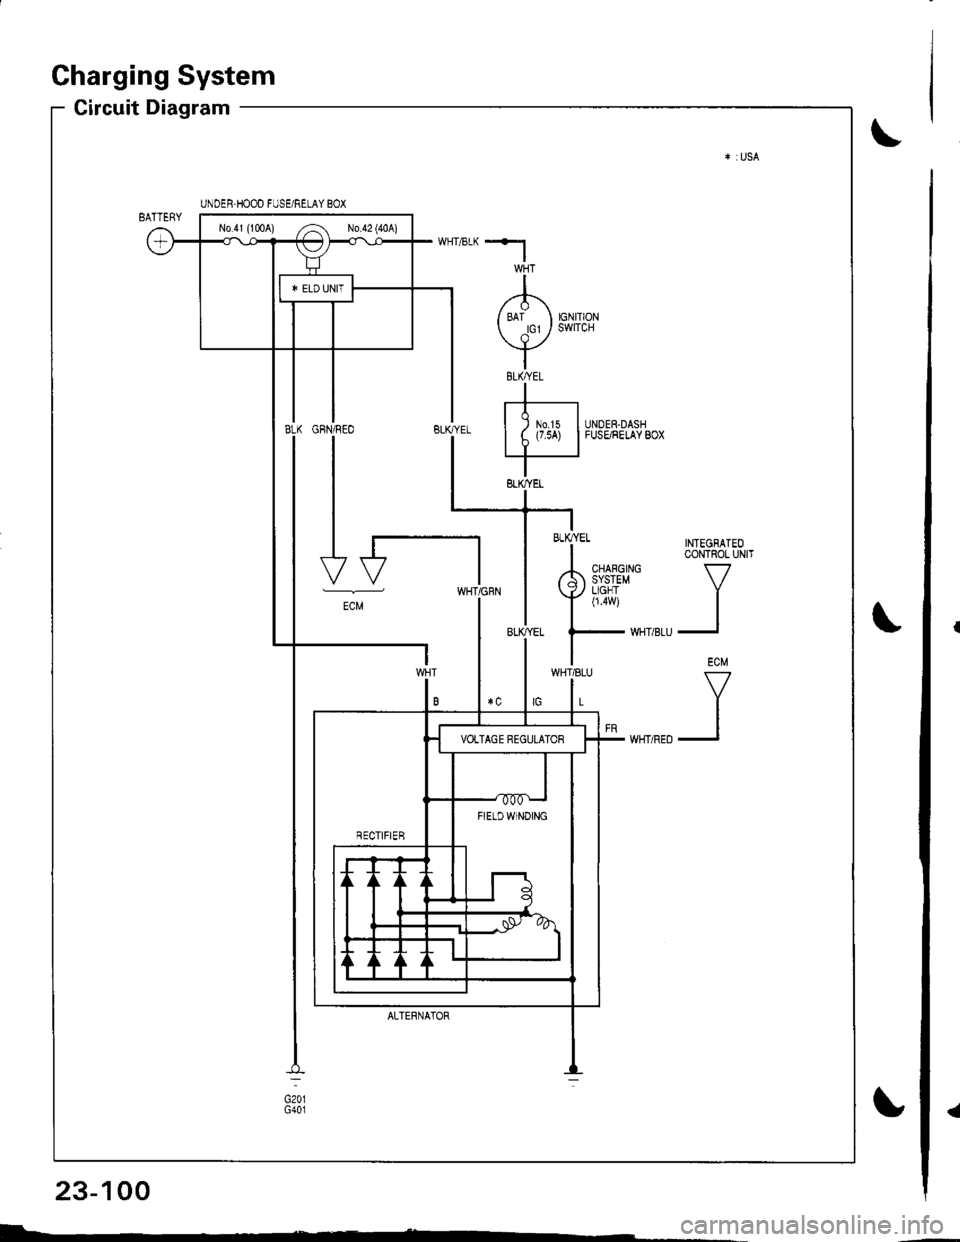 HONDA INTEGRA 1998 4.G User Guide a
Charging System
Circuit Diagram
INTEGRATEOCONTROL UNIT
V
II
ECM
V
II
UNDER.HOOD FUSE/RELAY BOX
No41 (1tl0A) /^ N0.42 (40A)
FIETDWINOING
WHT/8LU
L
GFN/REO
I
I
I
I-t
-"
ALTERNATOR
BLK/YEL
23-100
I- 